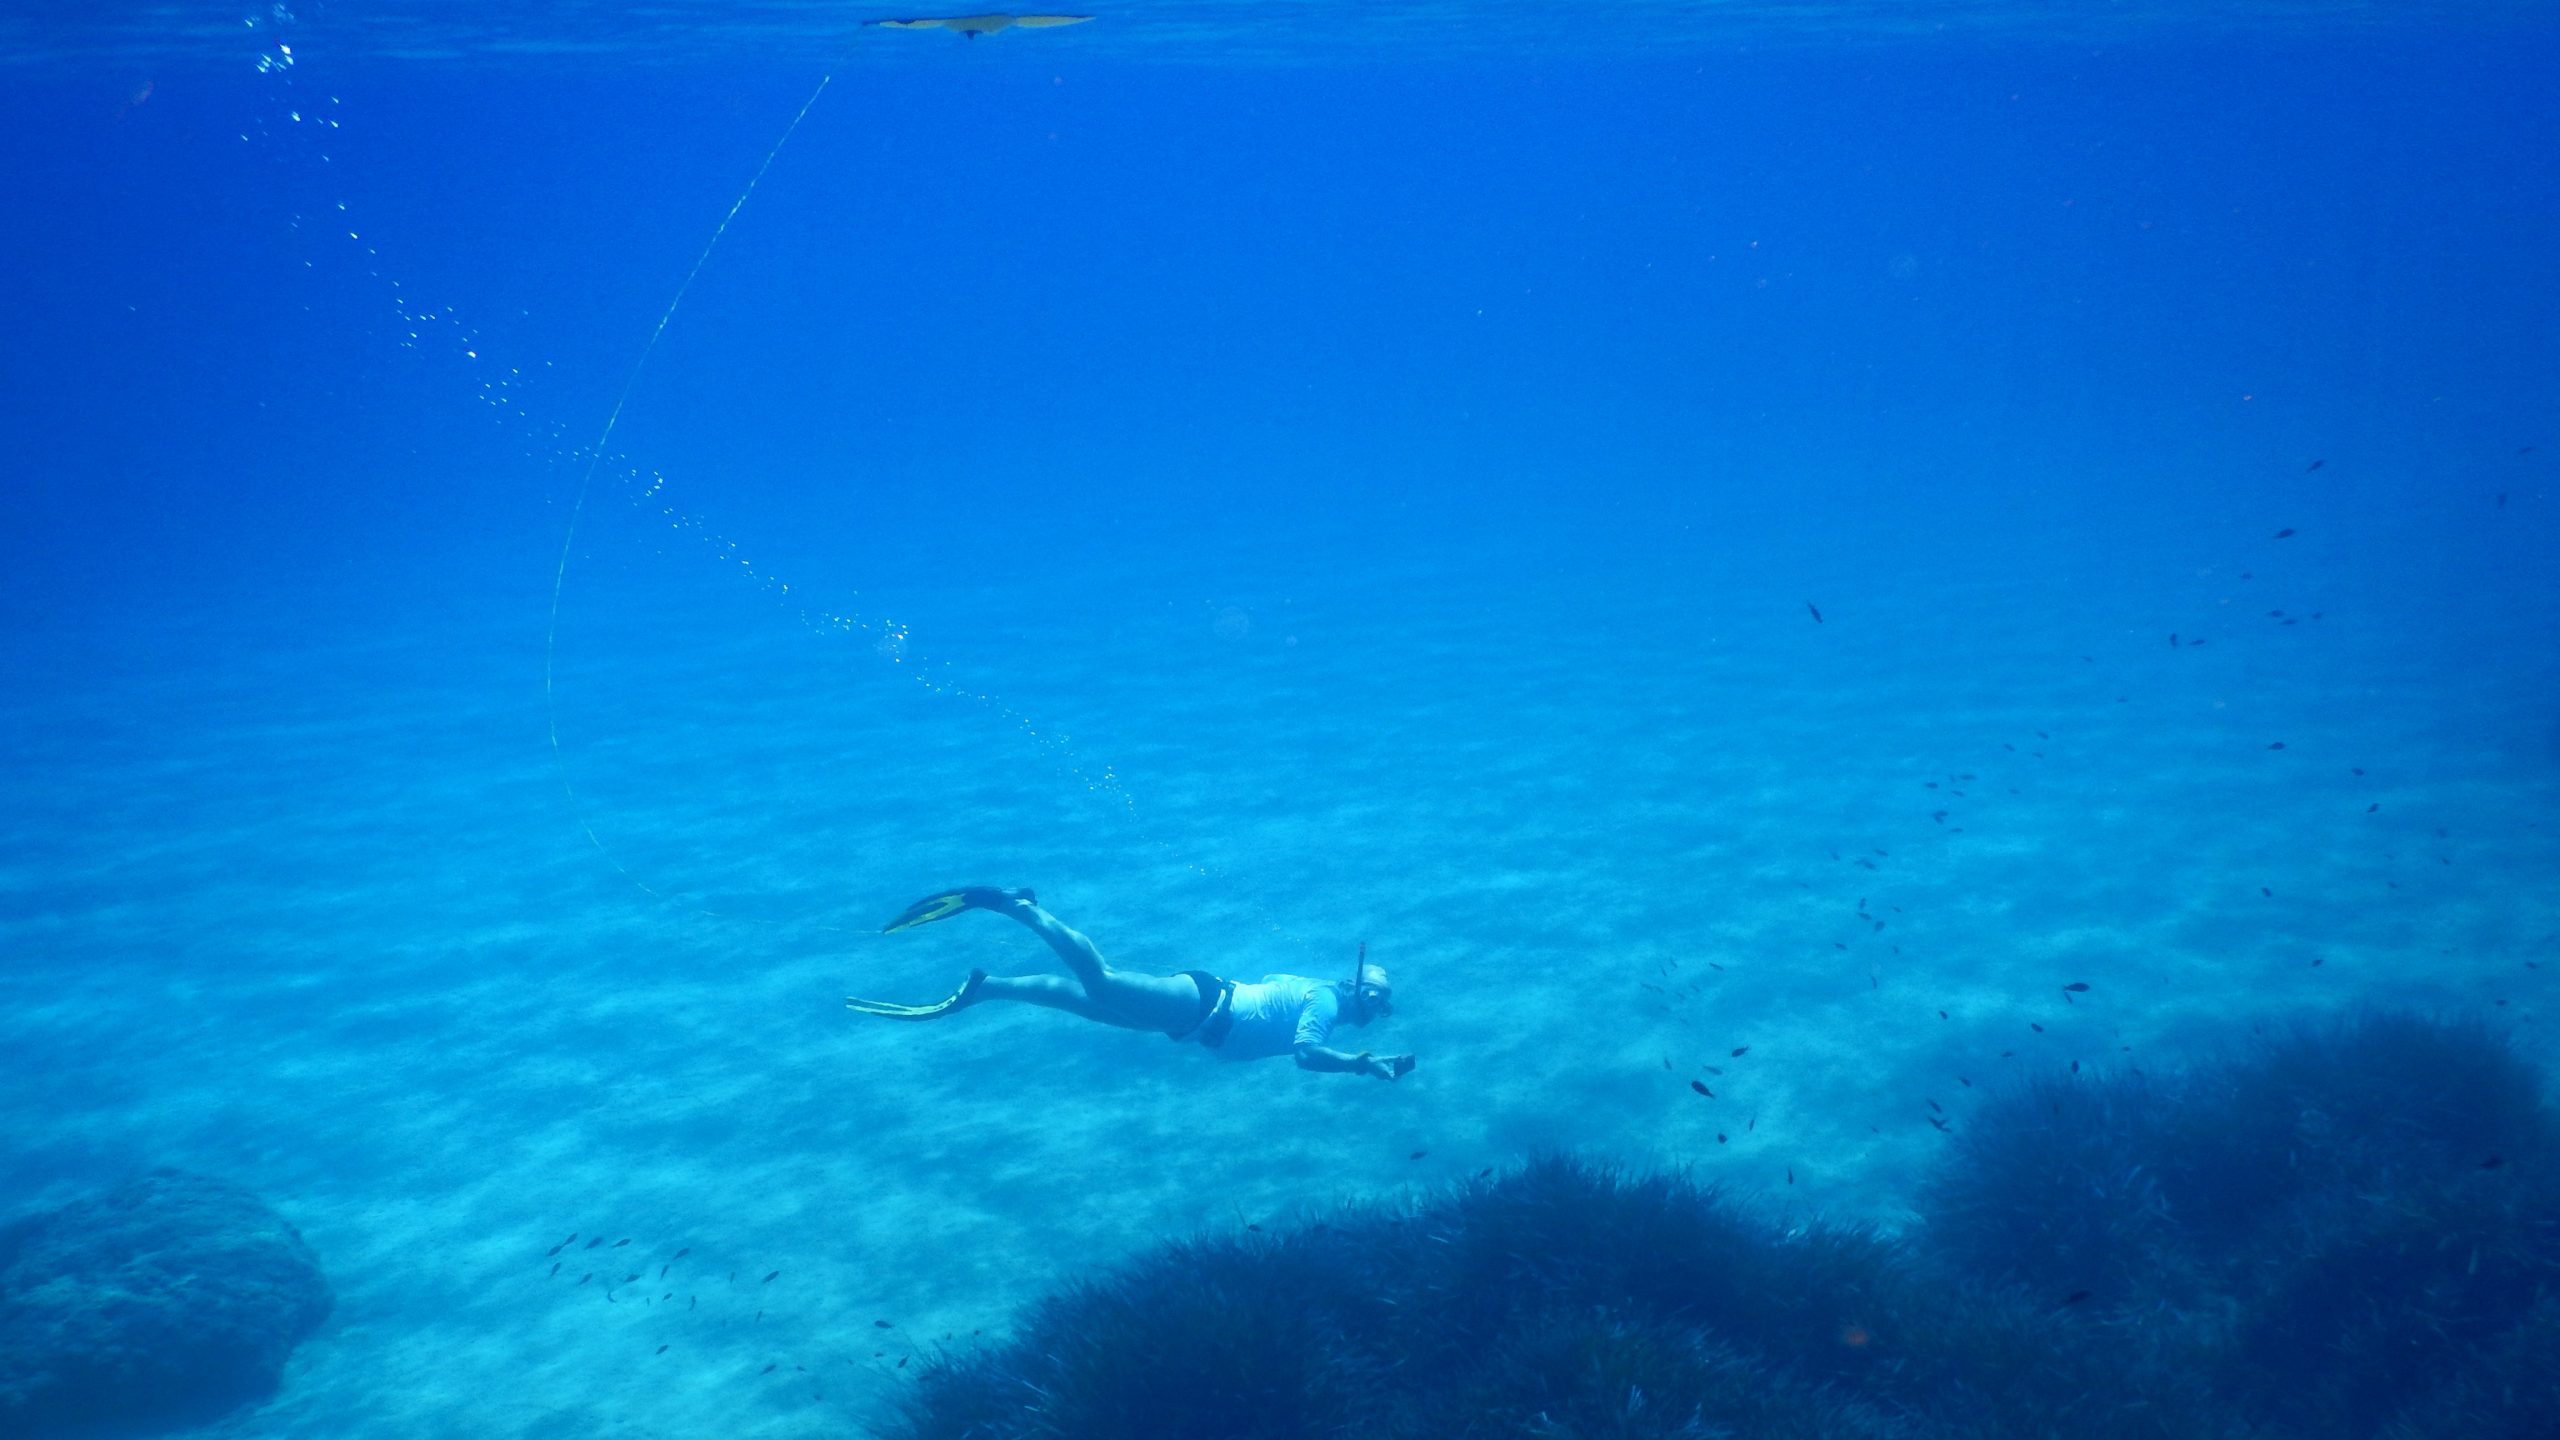 Eine Person schnorchelt 4-5m unter Wasser und fotografiert Fische